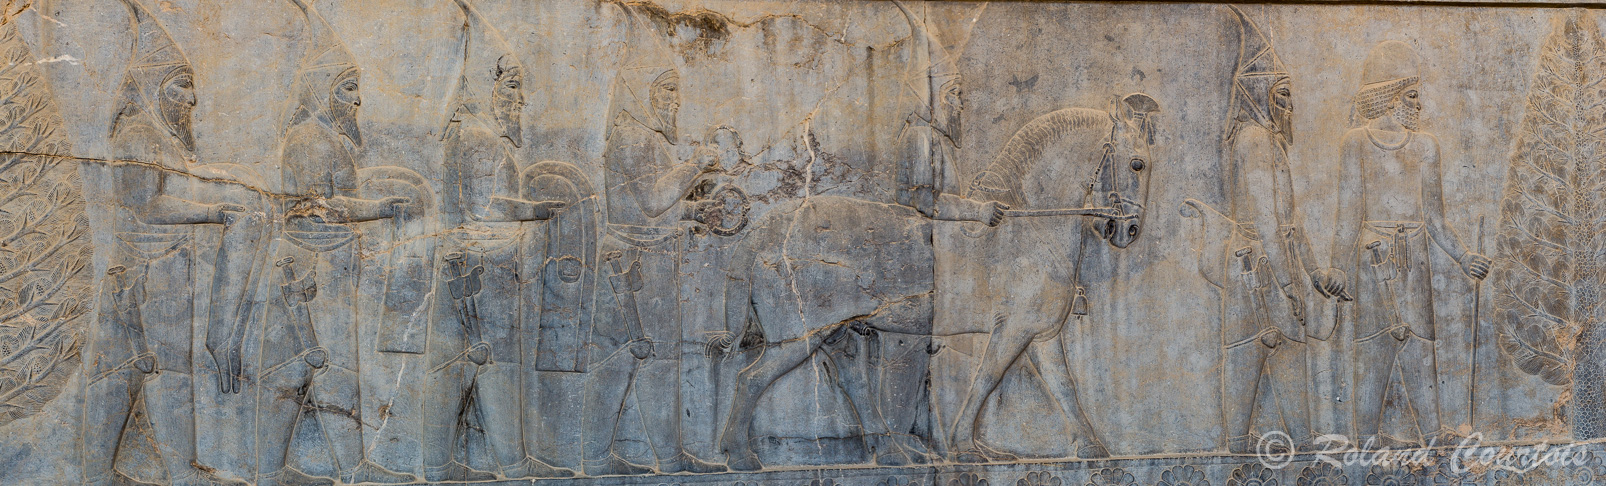 Persepolis :  Frise des Tributaires, Les Scythes, avec cheval hennissant, apportent des bracelets avec tête de taureau.